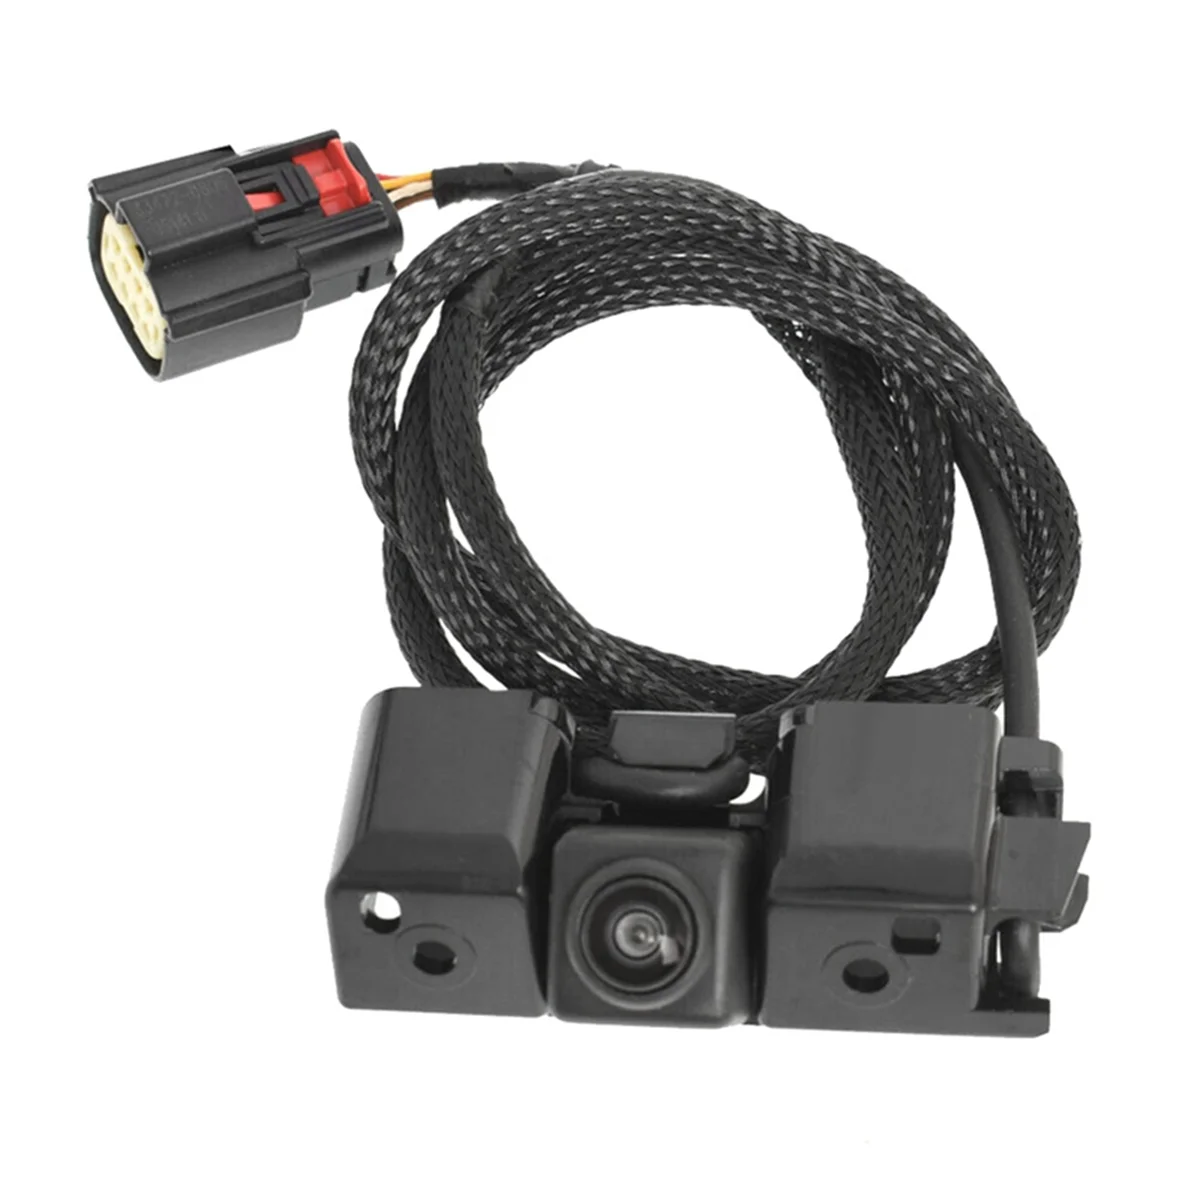 Камера заднего вида, резервная камера помощи при парковке заднего хода для GMC Chevrolet Silverado 23244435 84079952